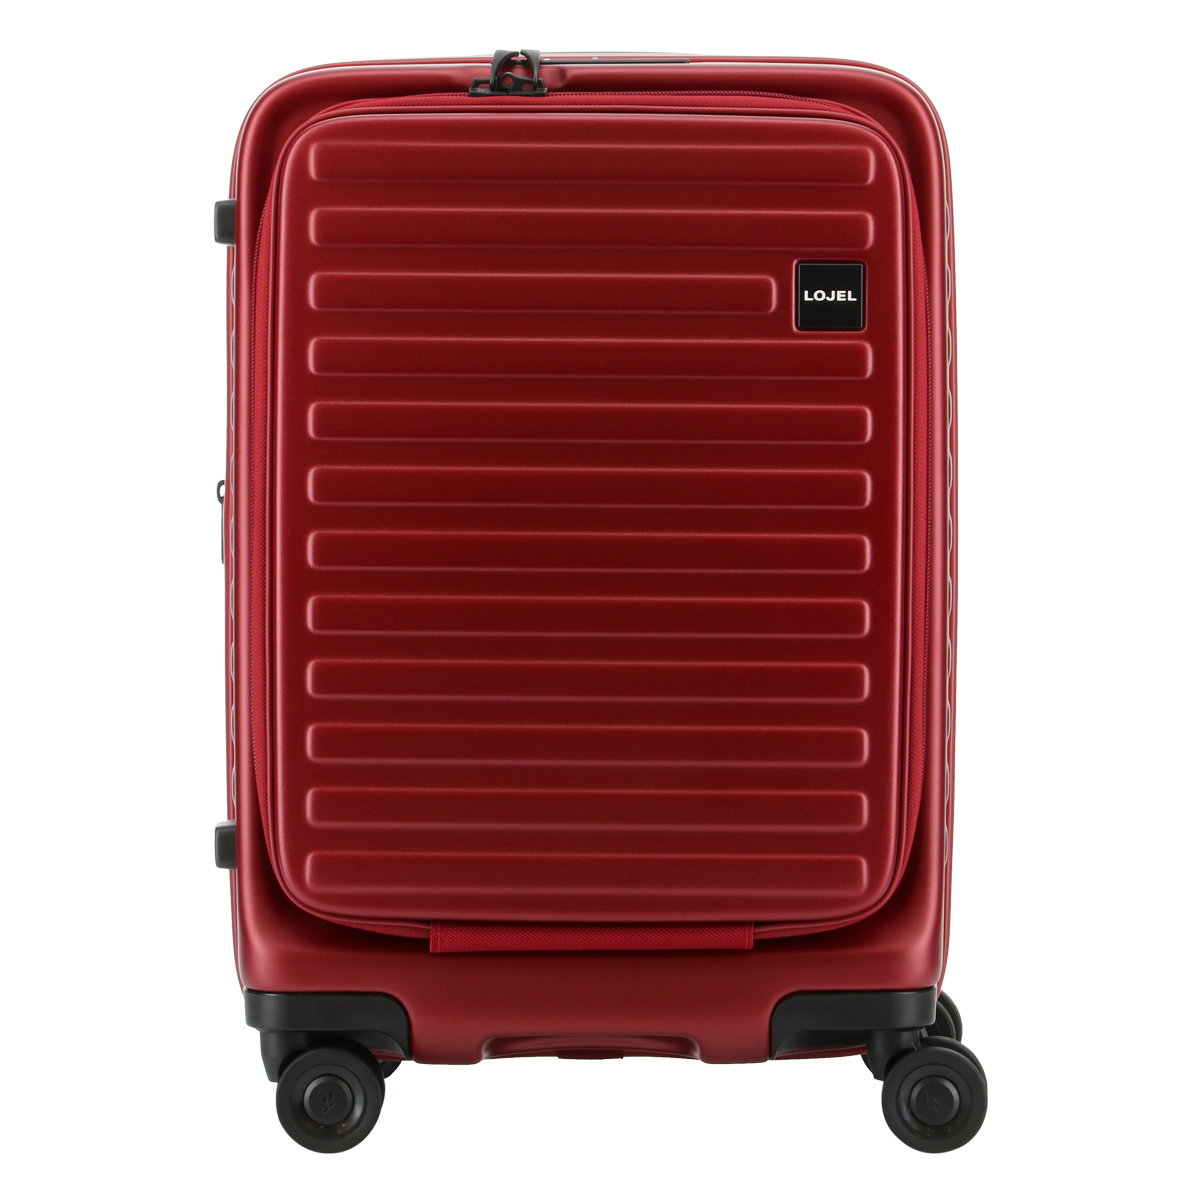 ロジェール LOJEL スーツケース CUBO-S 50.5cm キャリーケース キャリーバッグ 機内持ち込み可能 拡張機能 TSAロック搭載  [PO10]